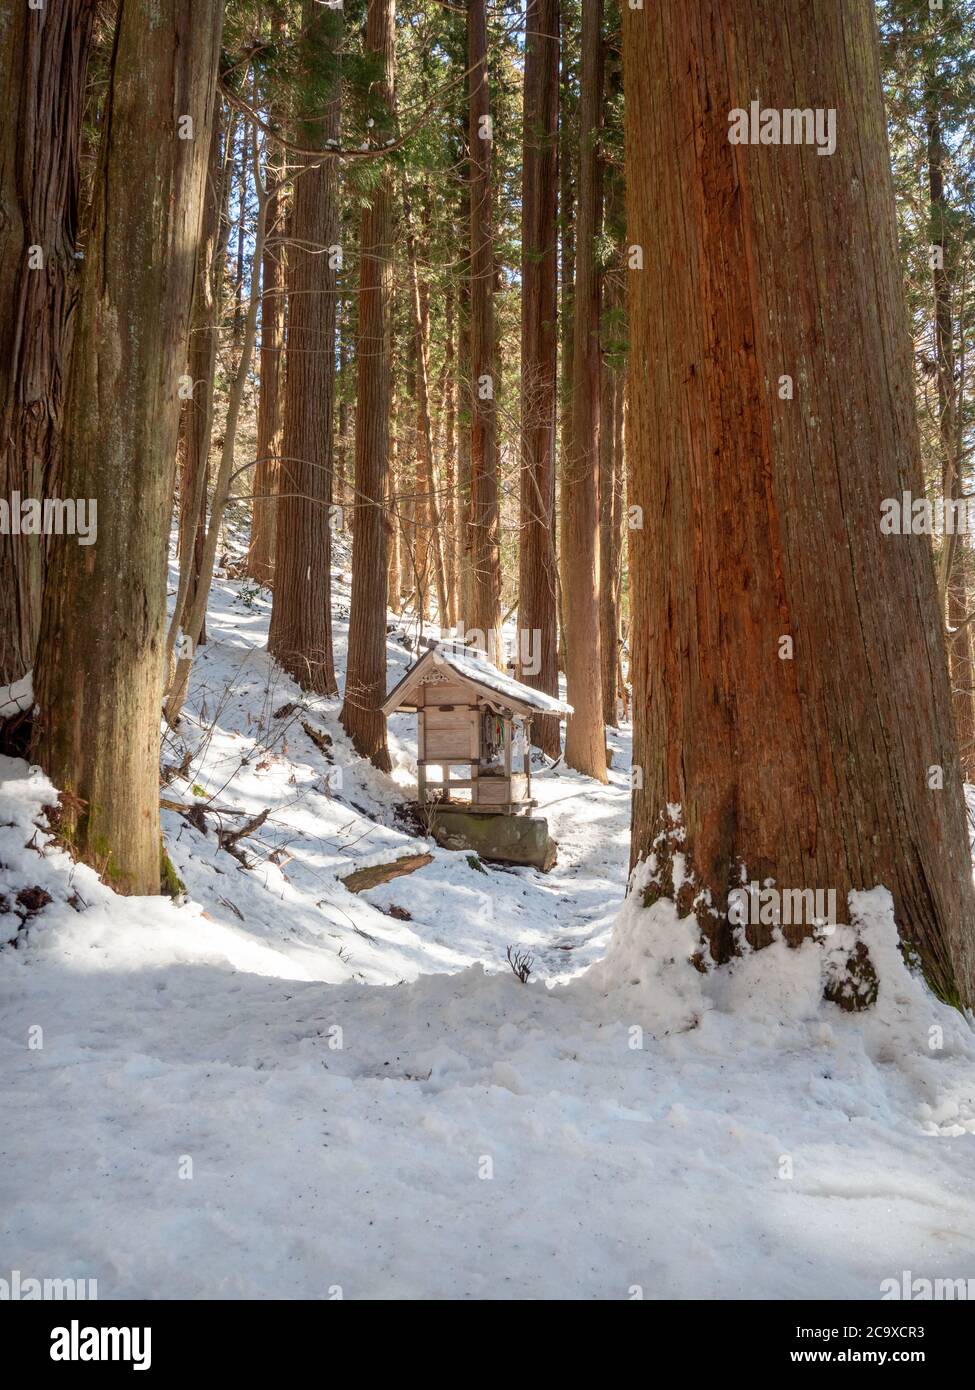 Un petit sanctuaire se trouve au milieu des arbres forestiers géants au sanctuaire inférieur de Togakushi, le long des marches qui montent jusqu'au sanctuaire proprement dit. Japon. Banque D'Images